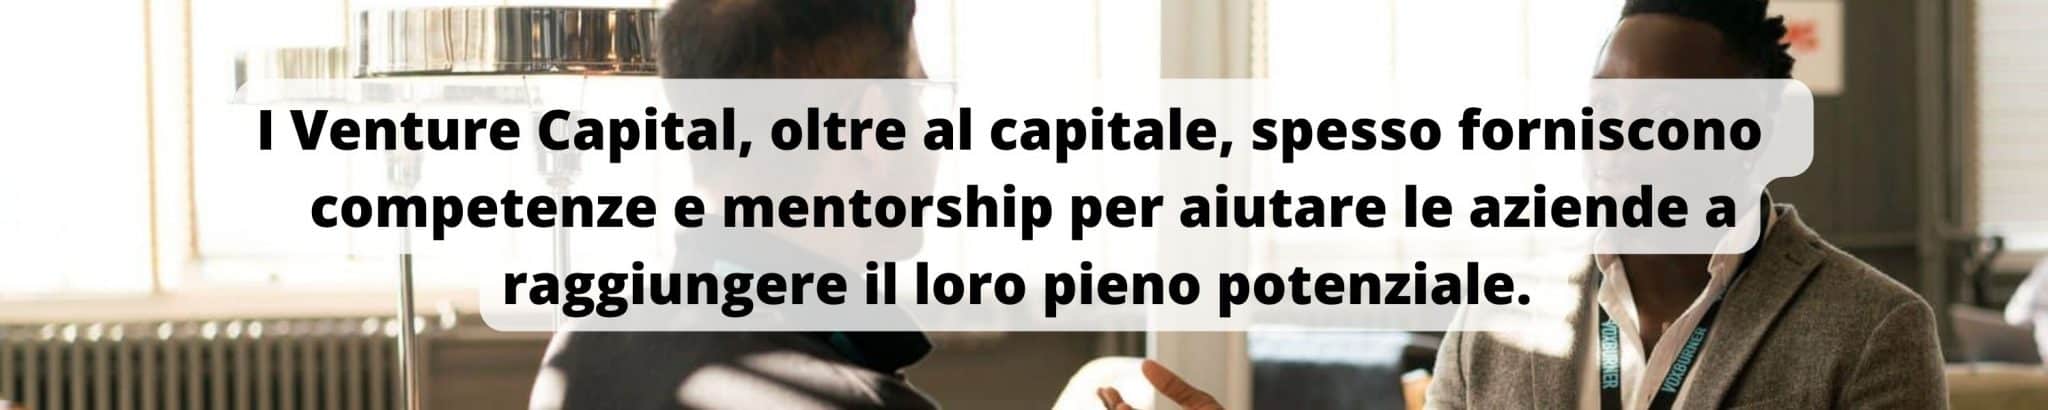 I venture capital offrono capitale e anche competenze e conoscenze.